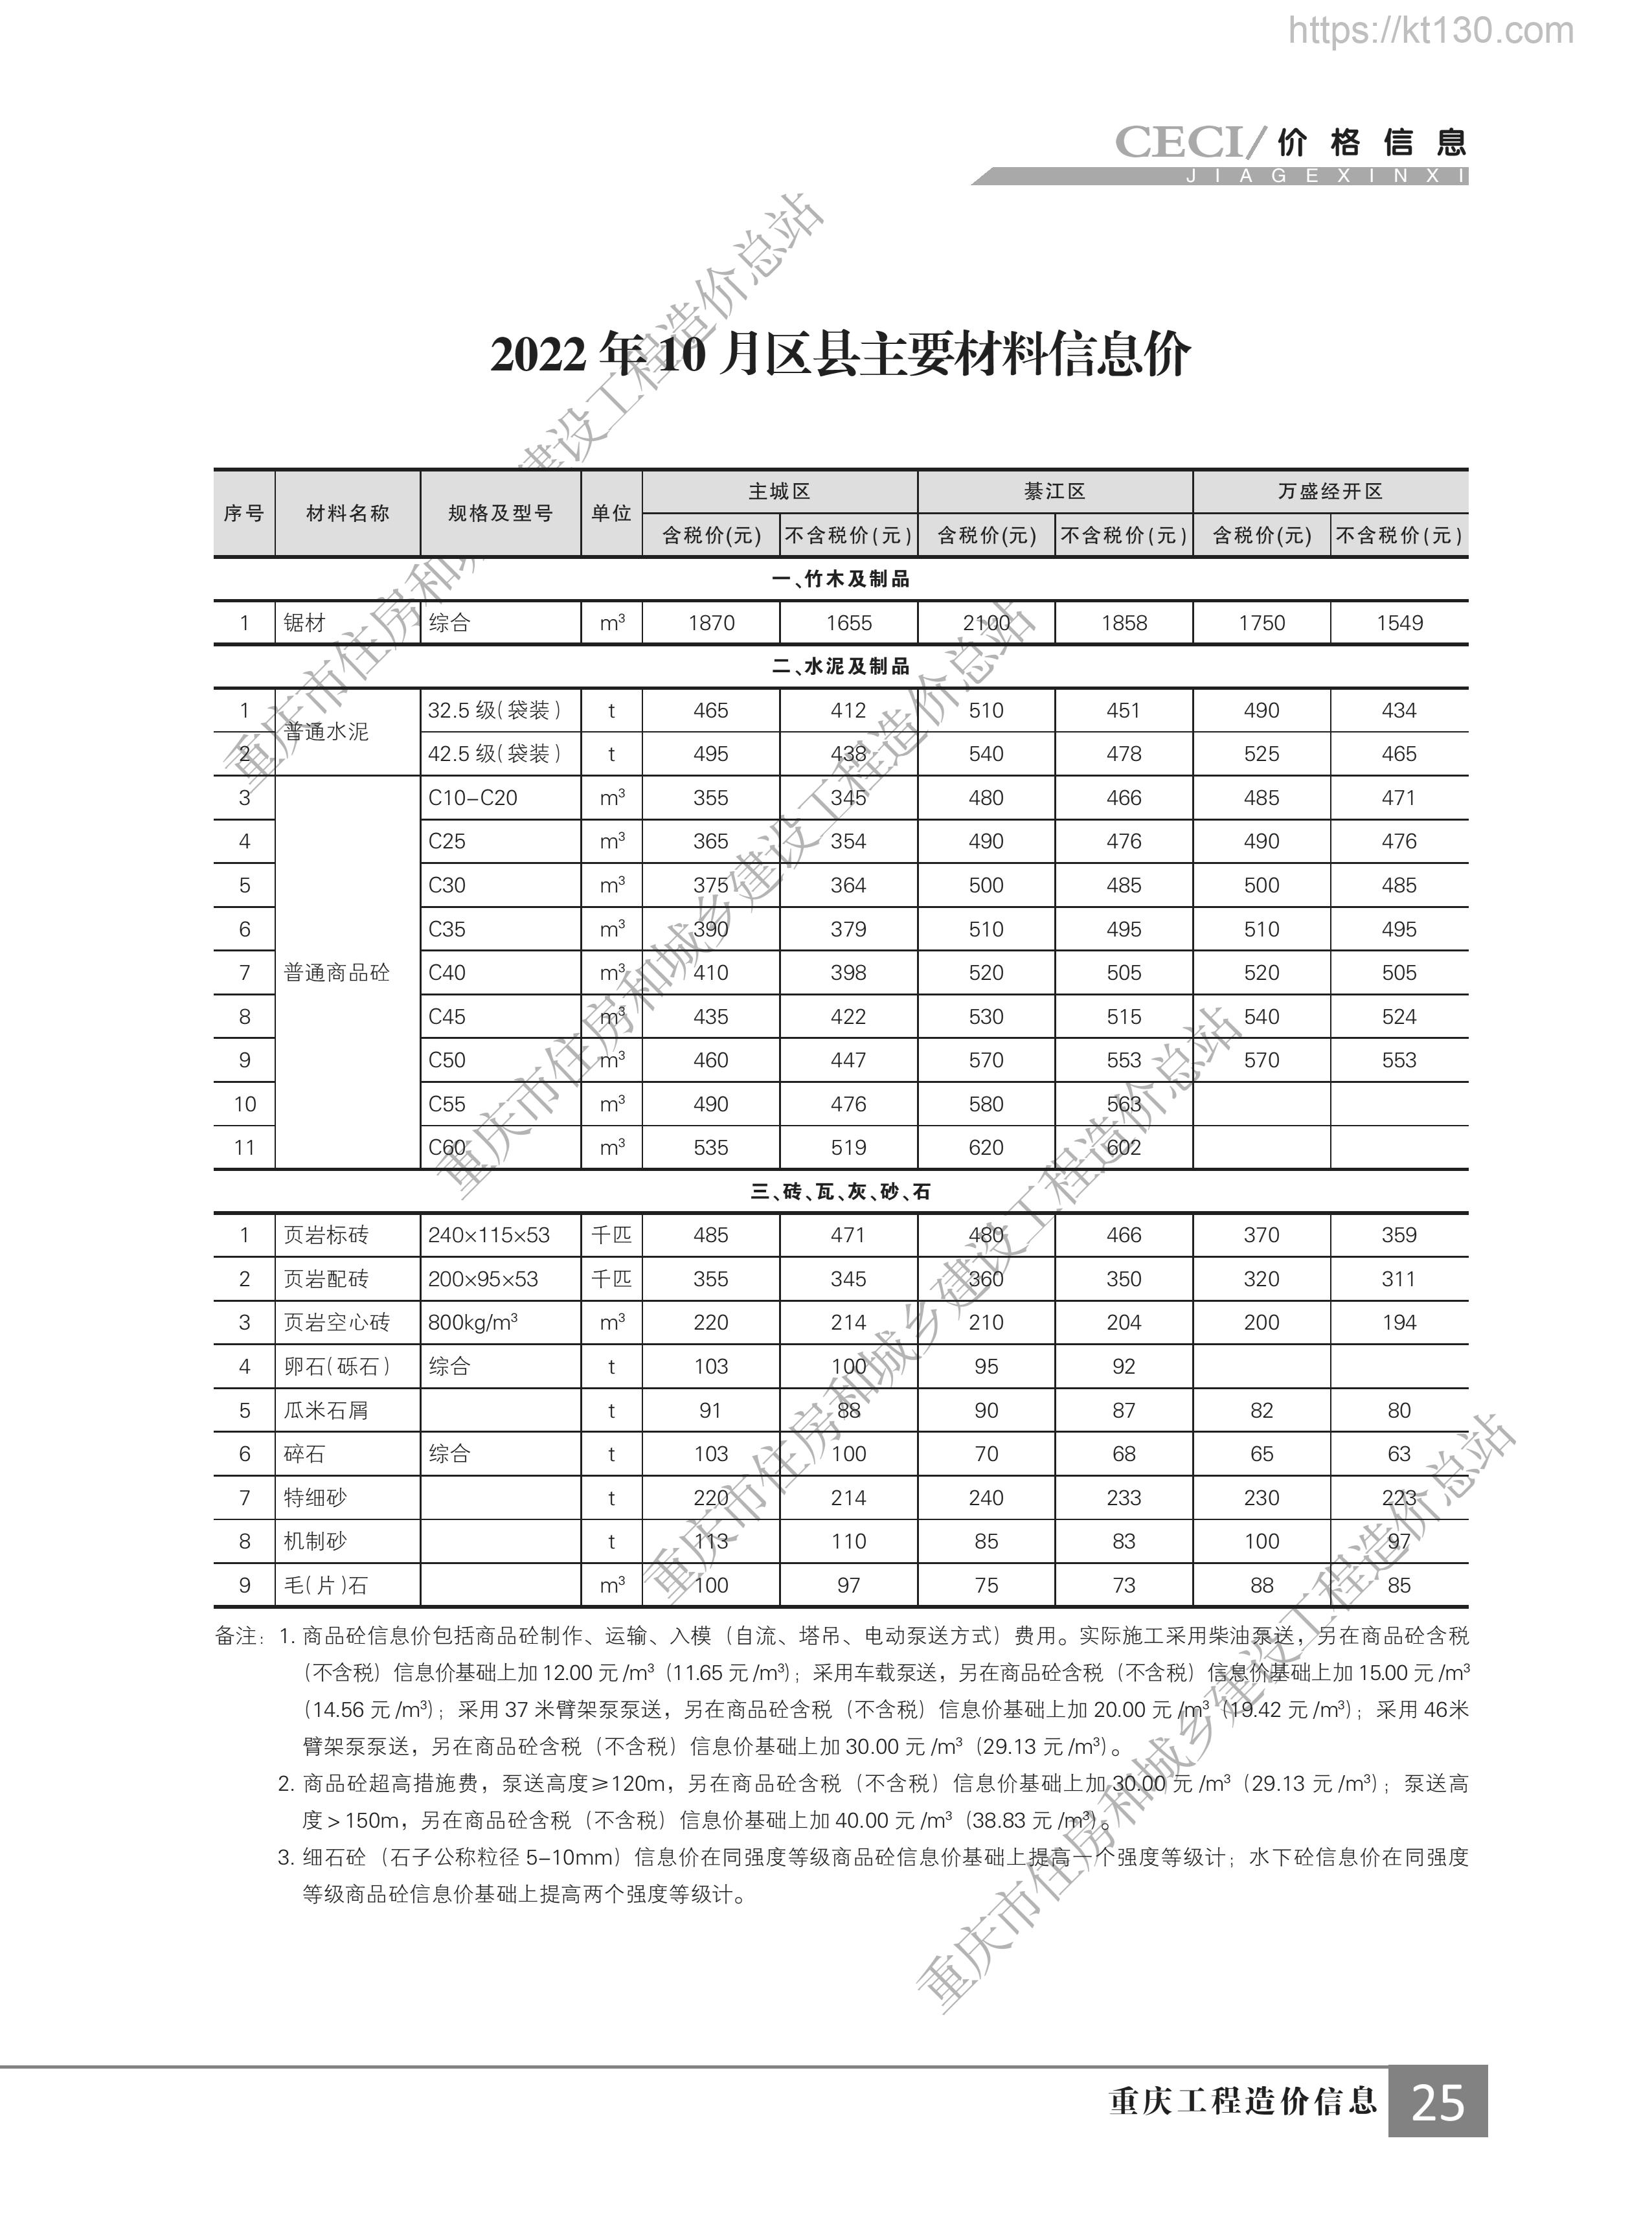 重庆市2022年11月份水泥及制品指导价